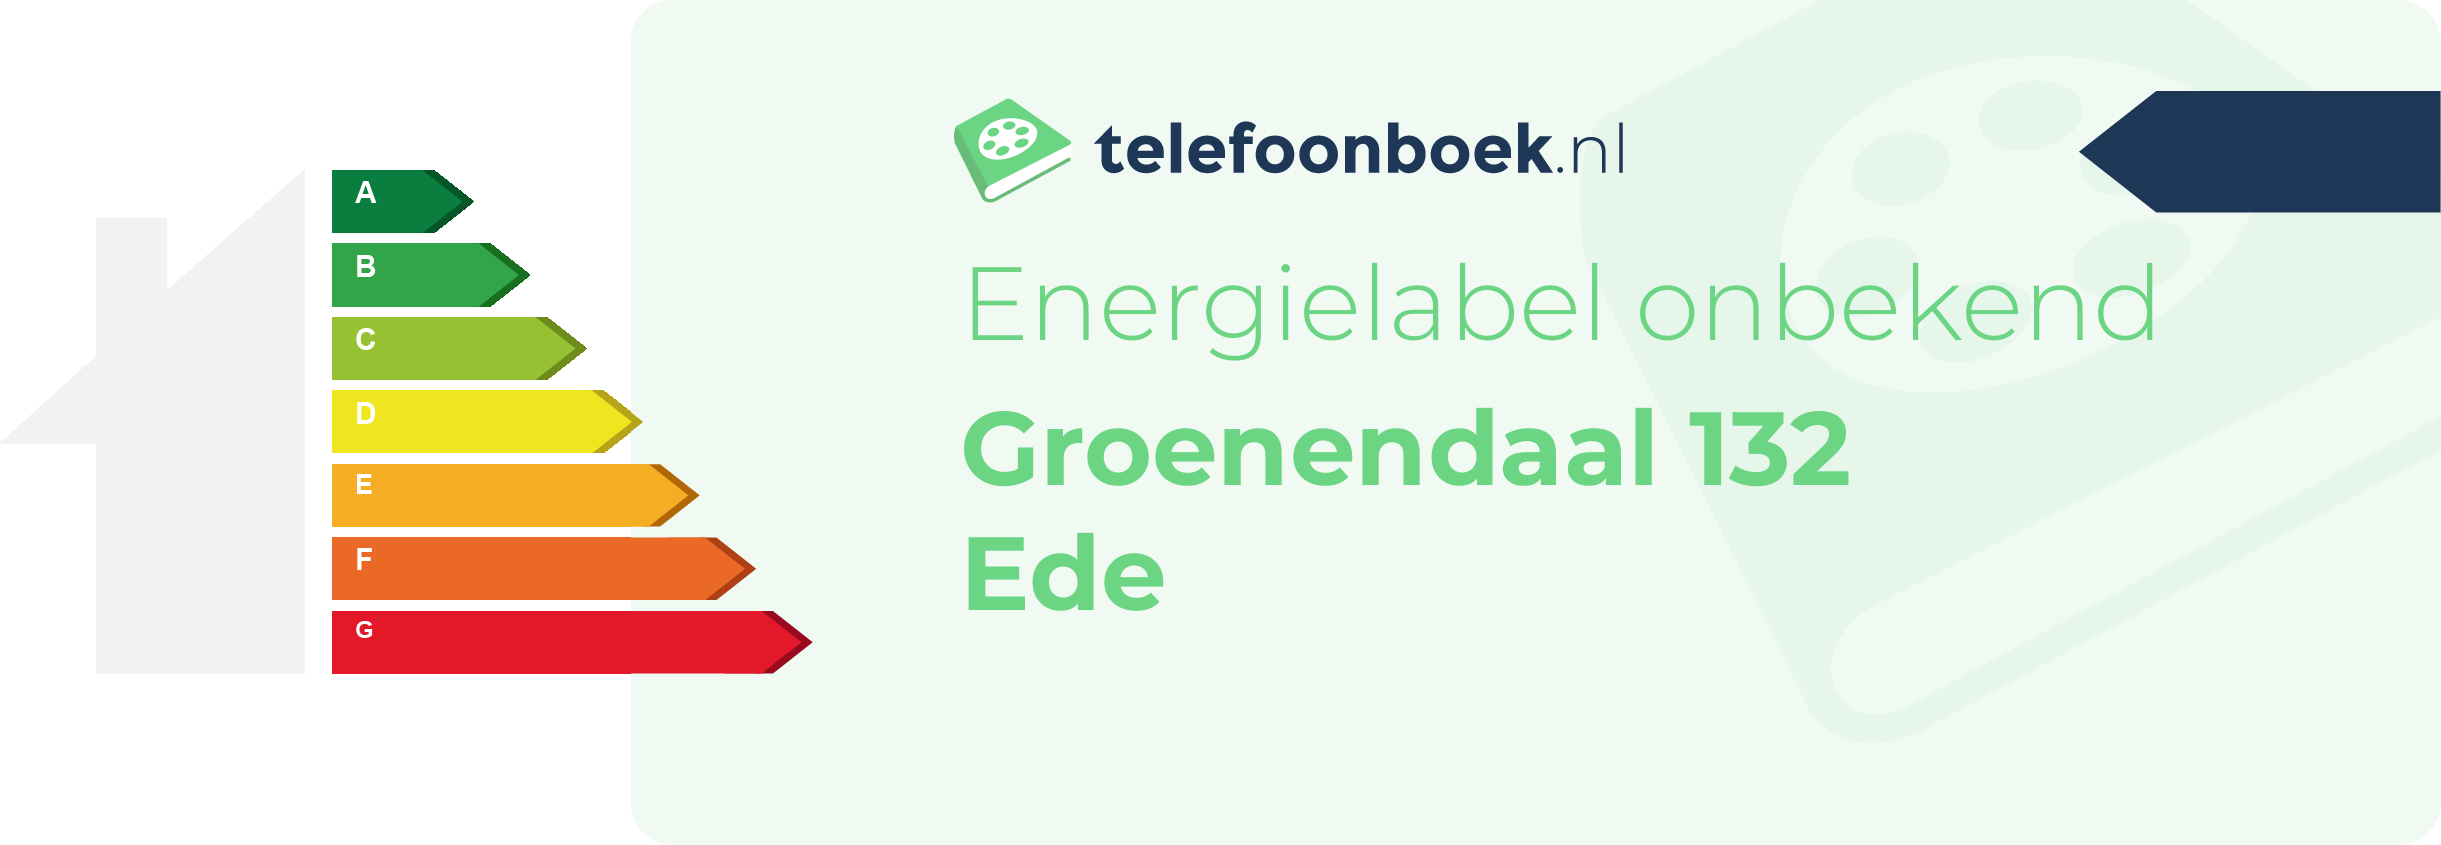 Energielabel Groenendaal 132 Ede